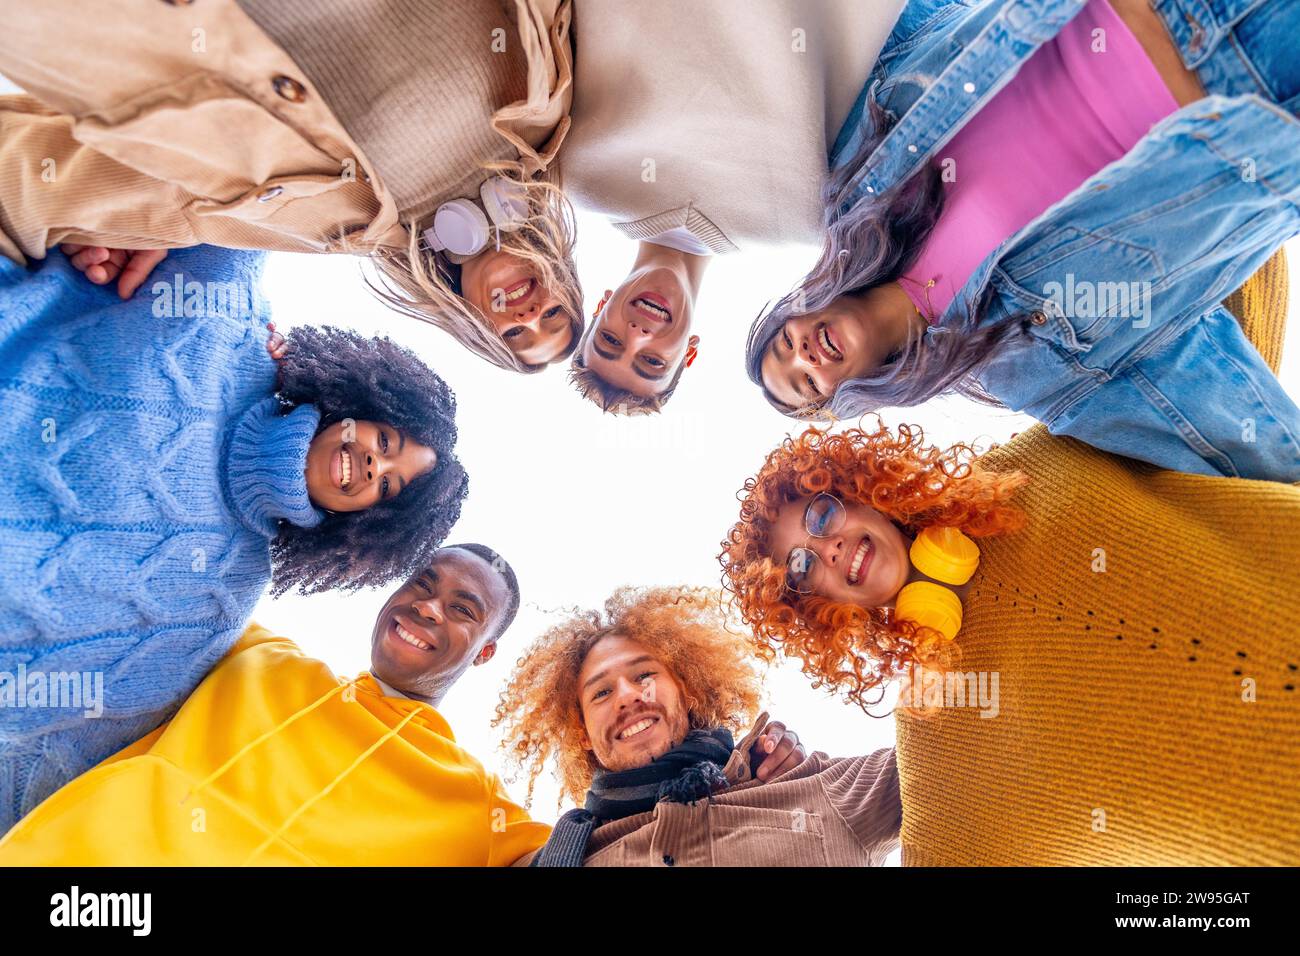 Niedriger Blickwinkel von multiethnischen Menschen, die einen Kreis bilden und in die Kamera lächeln Stockfoto